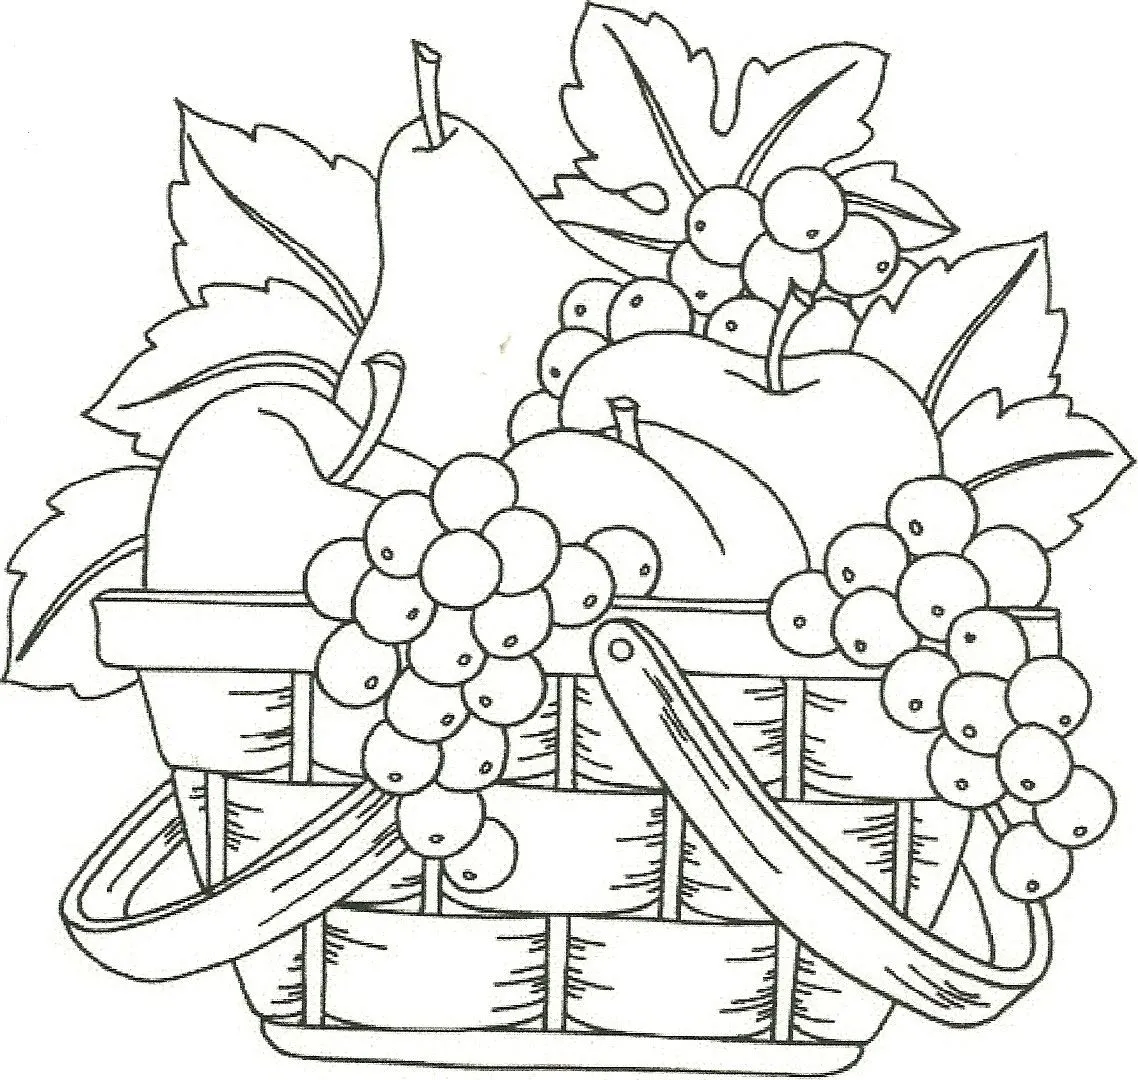 Dibujos de frutas o fruteros para colorear - Imagui